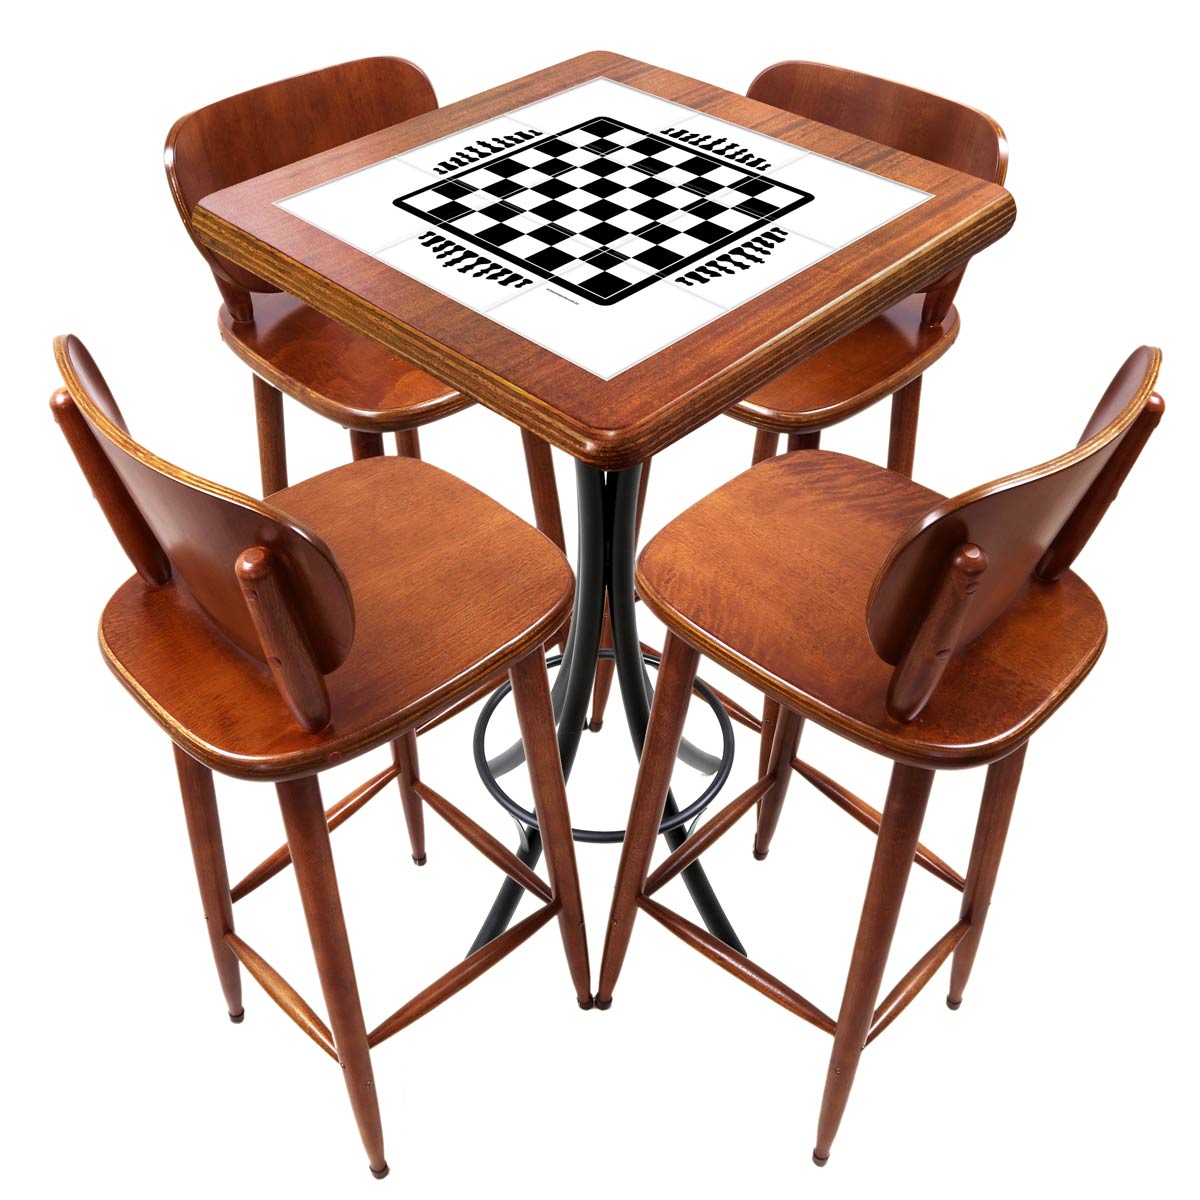 Interior do clube de xadrez com tabuleiro, peças e relógio na mesa, cadeiras  e estantes com livros